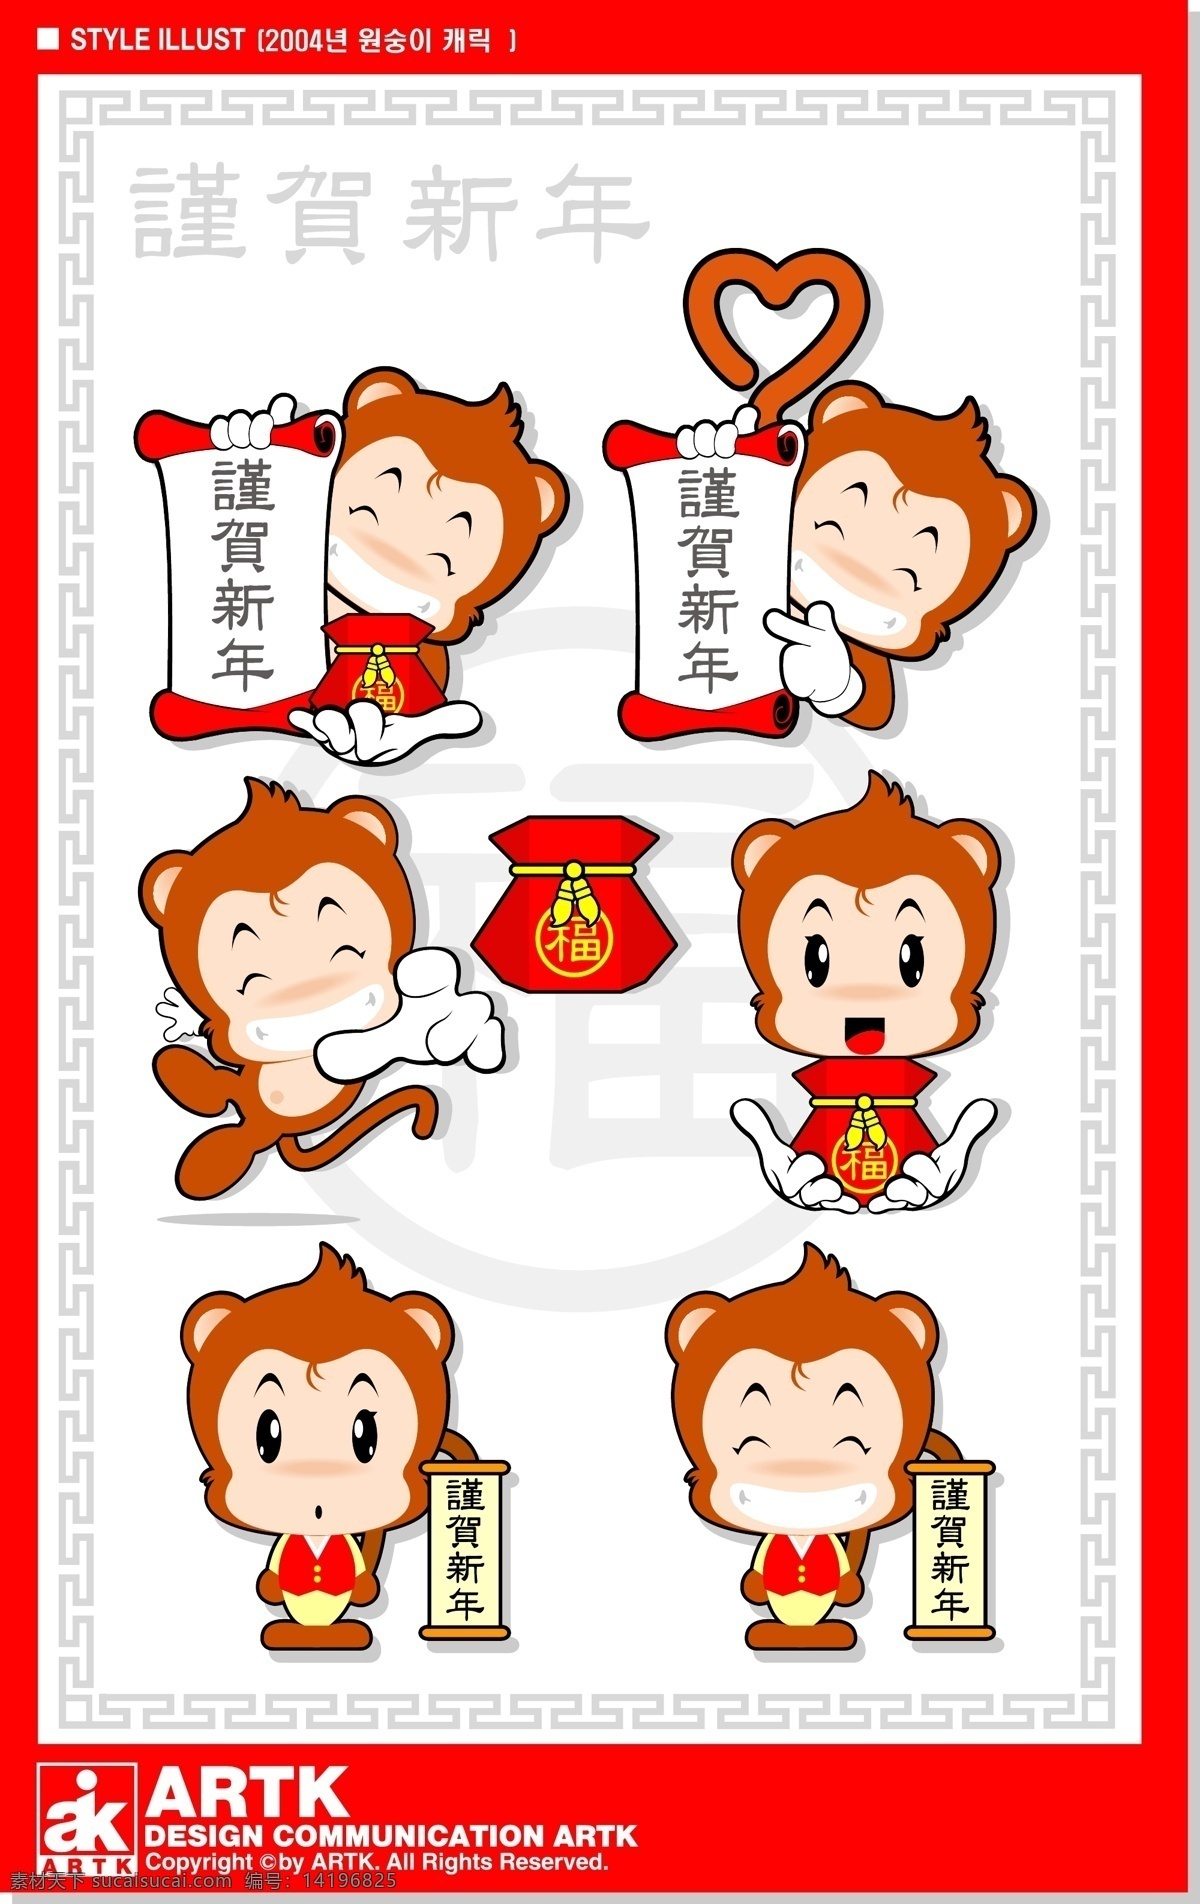 韩国 可爱 小 猴子 形象 矢量图 谨贺新年 模板 设计稿 小猴子 节日大全 源文件 节日素材